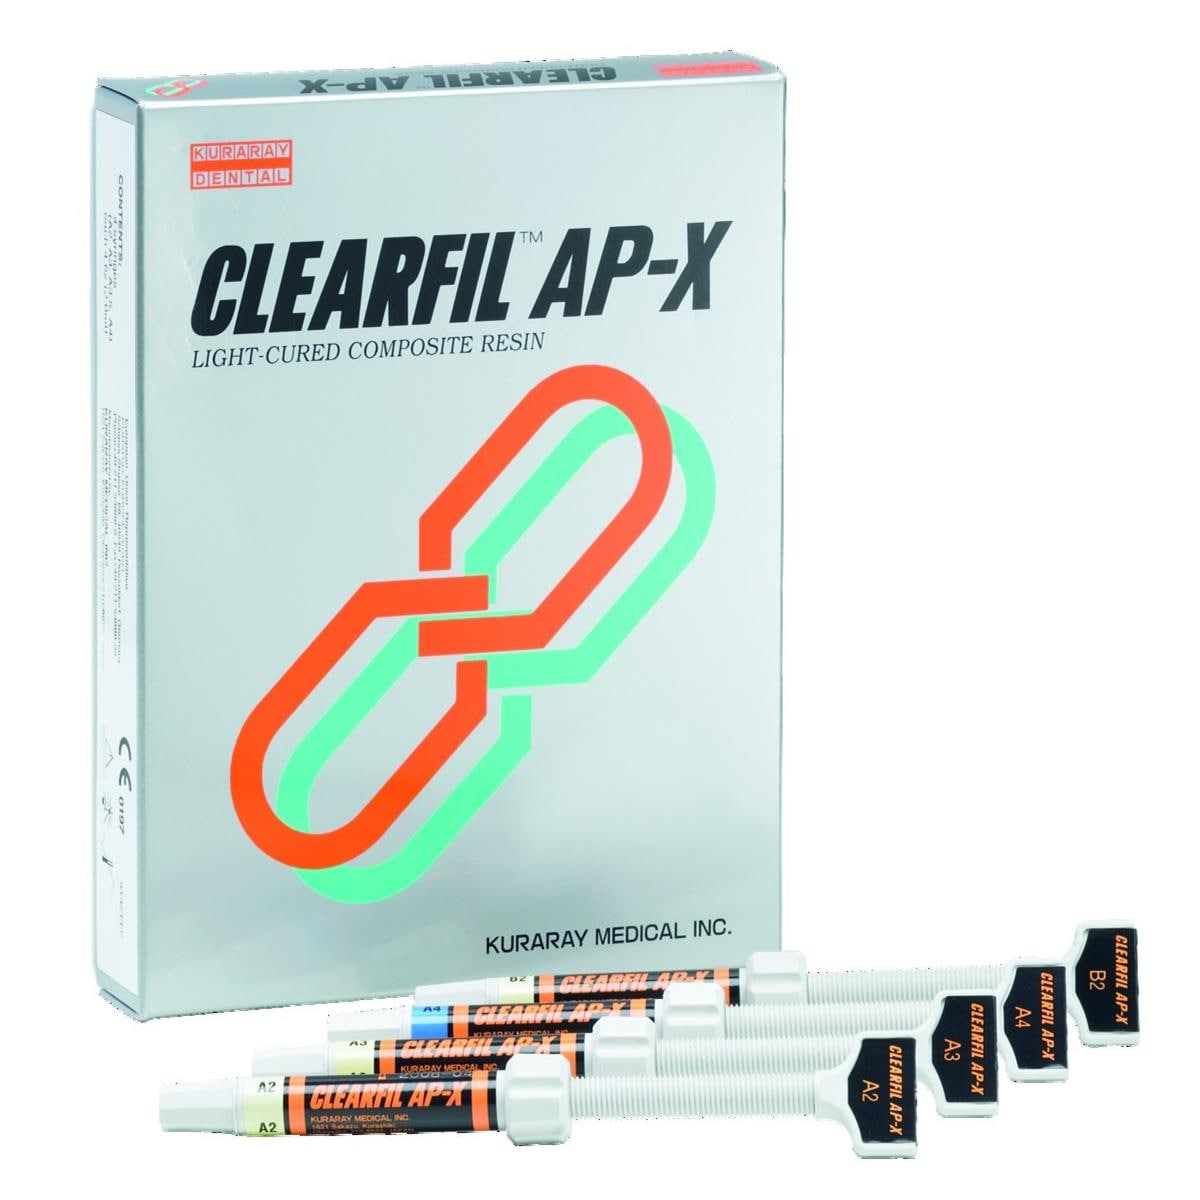 Clearfil AP-X KURARAY - A3 - Seringue de 4,6g